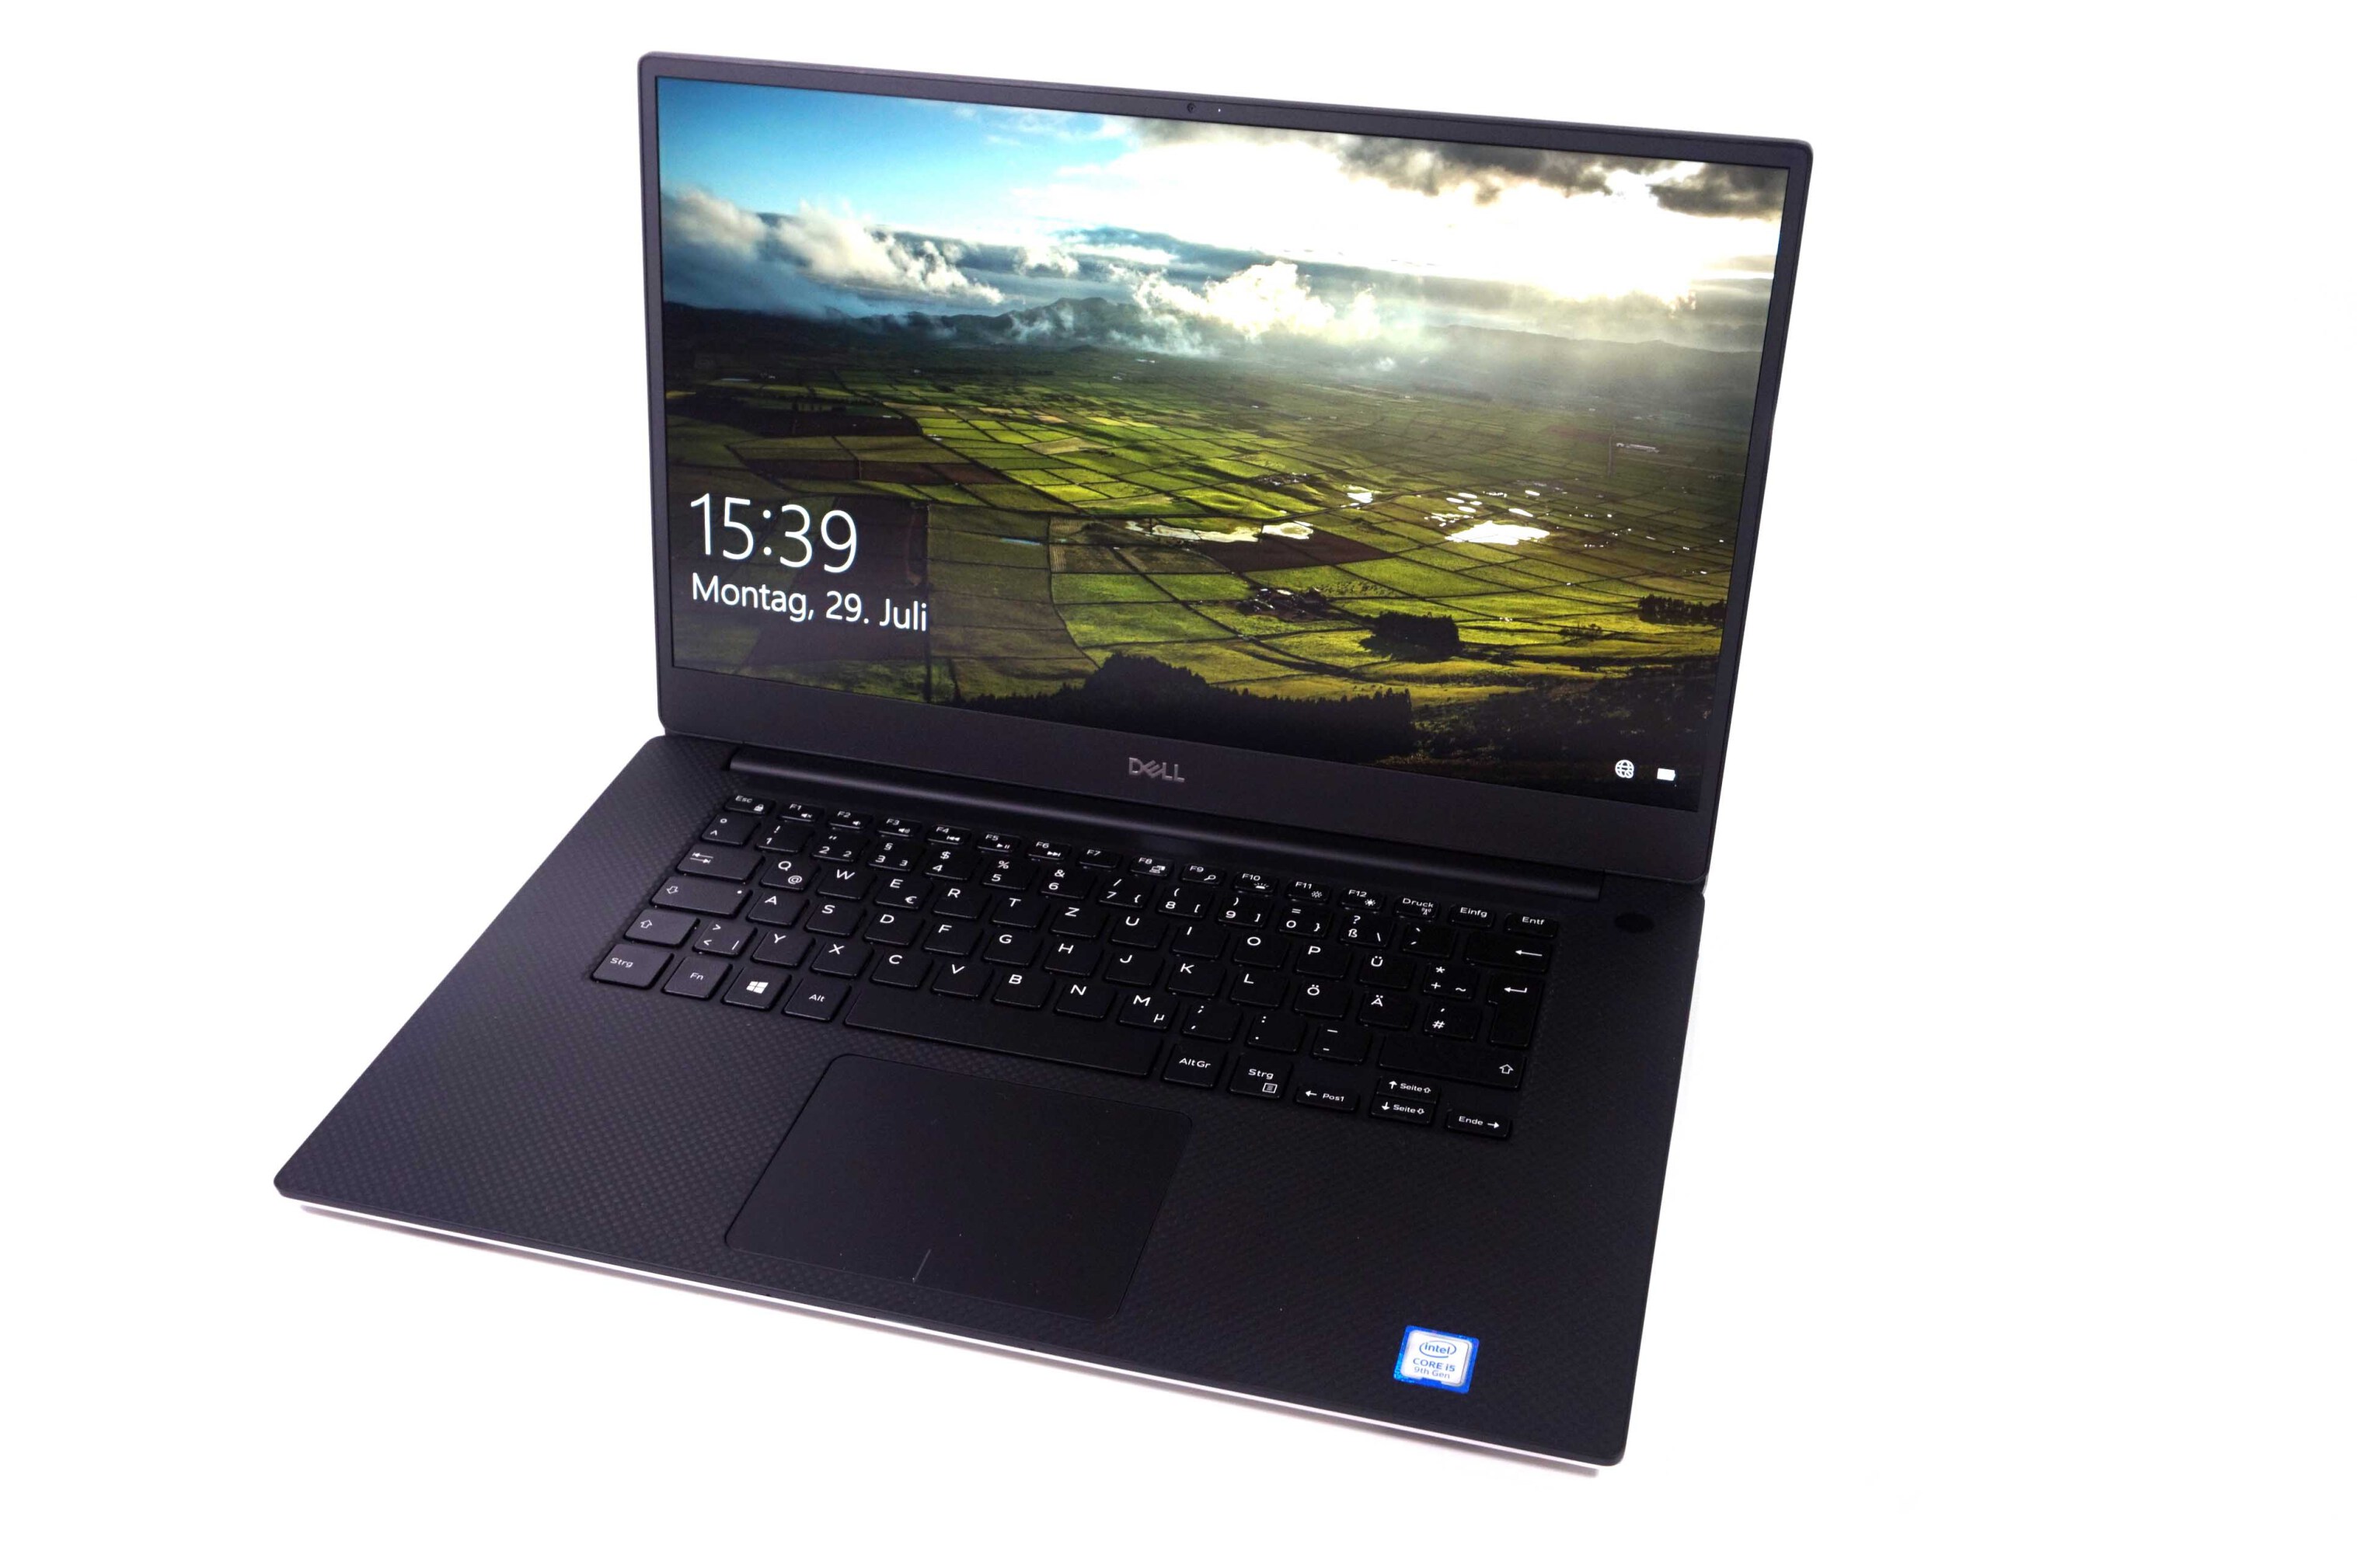  لپ تاپ Dell Xps 15 7590 با پردازنده نسل نهم | لپ تاپ Dell Xps 15 7590 با صفحه نمایش FHD | لاکچری لپ تاپ 